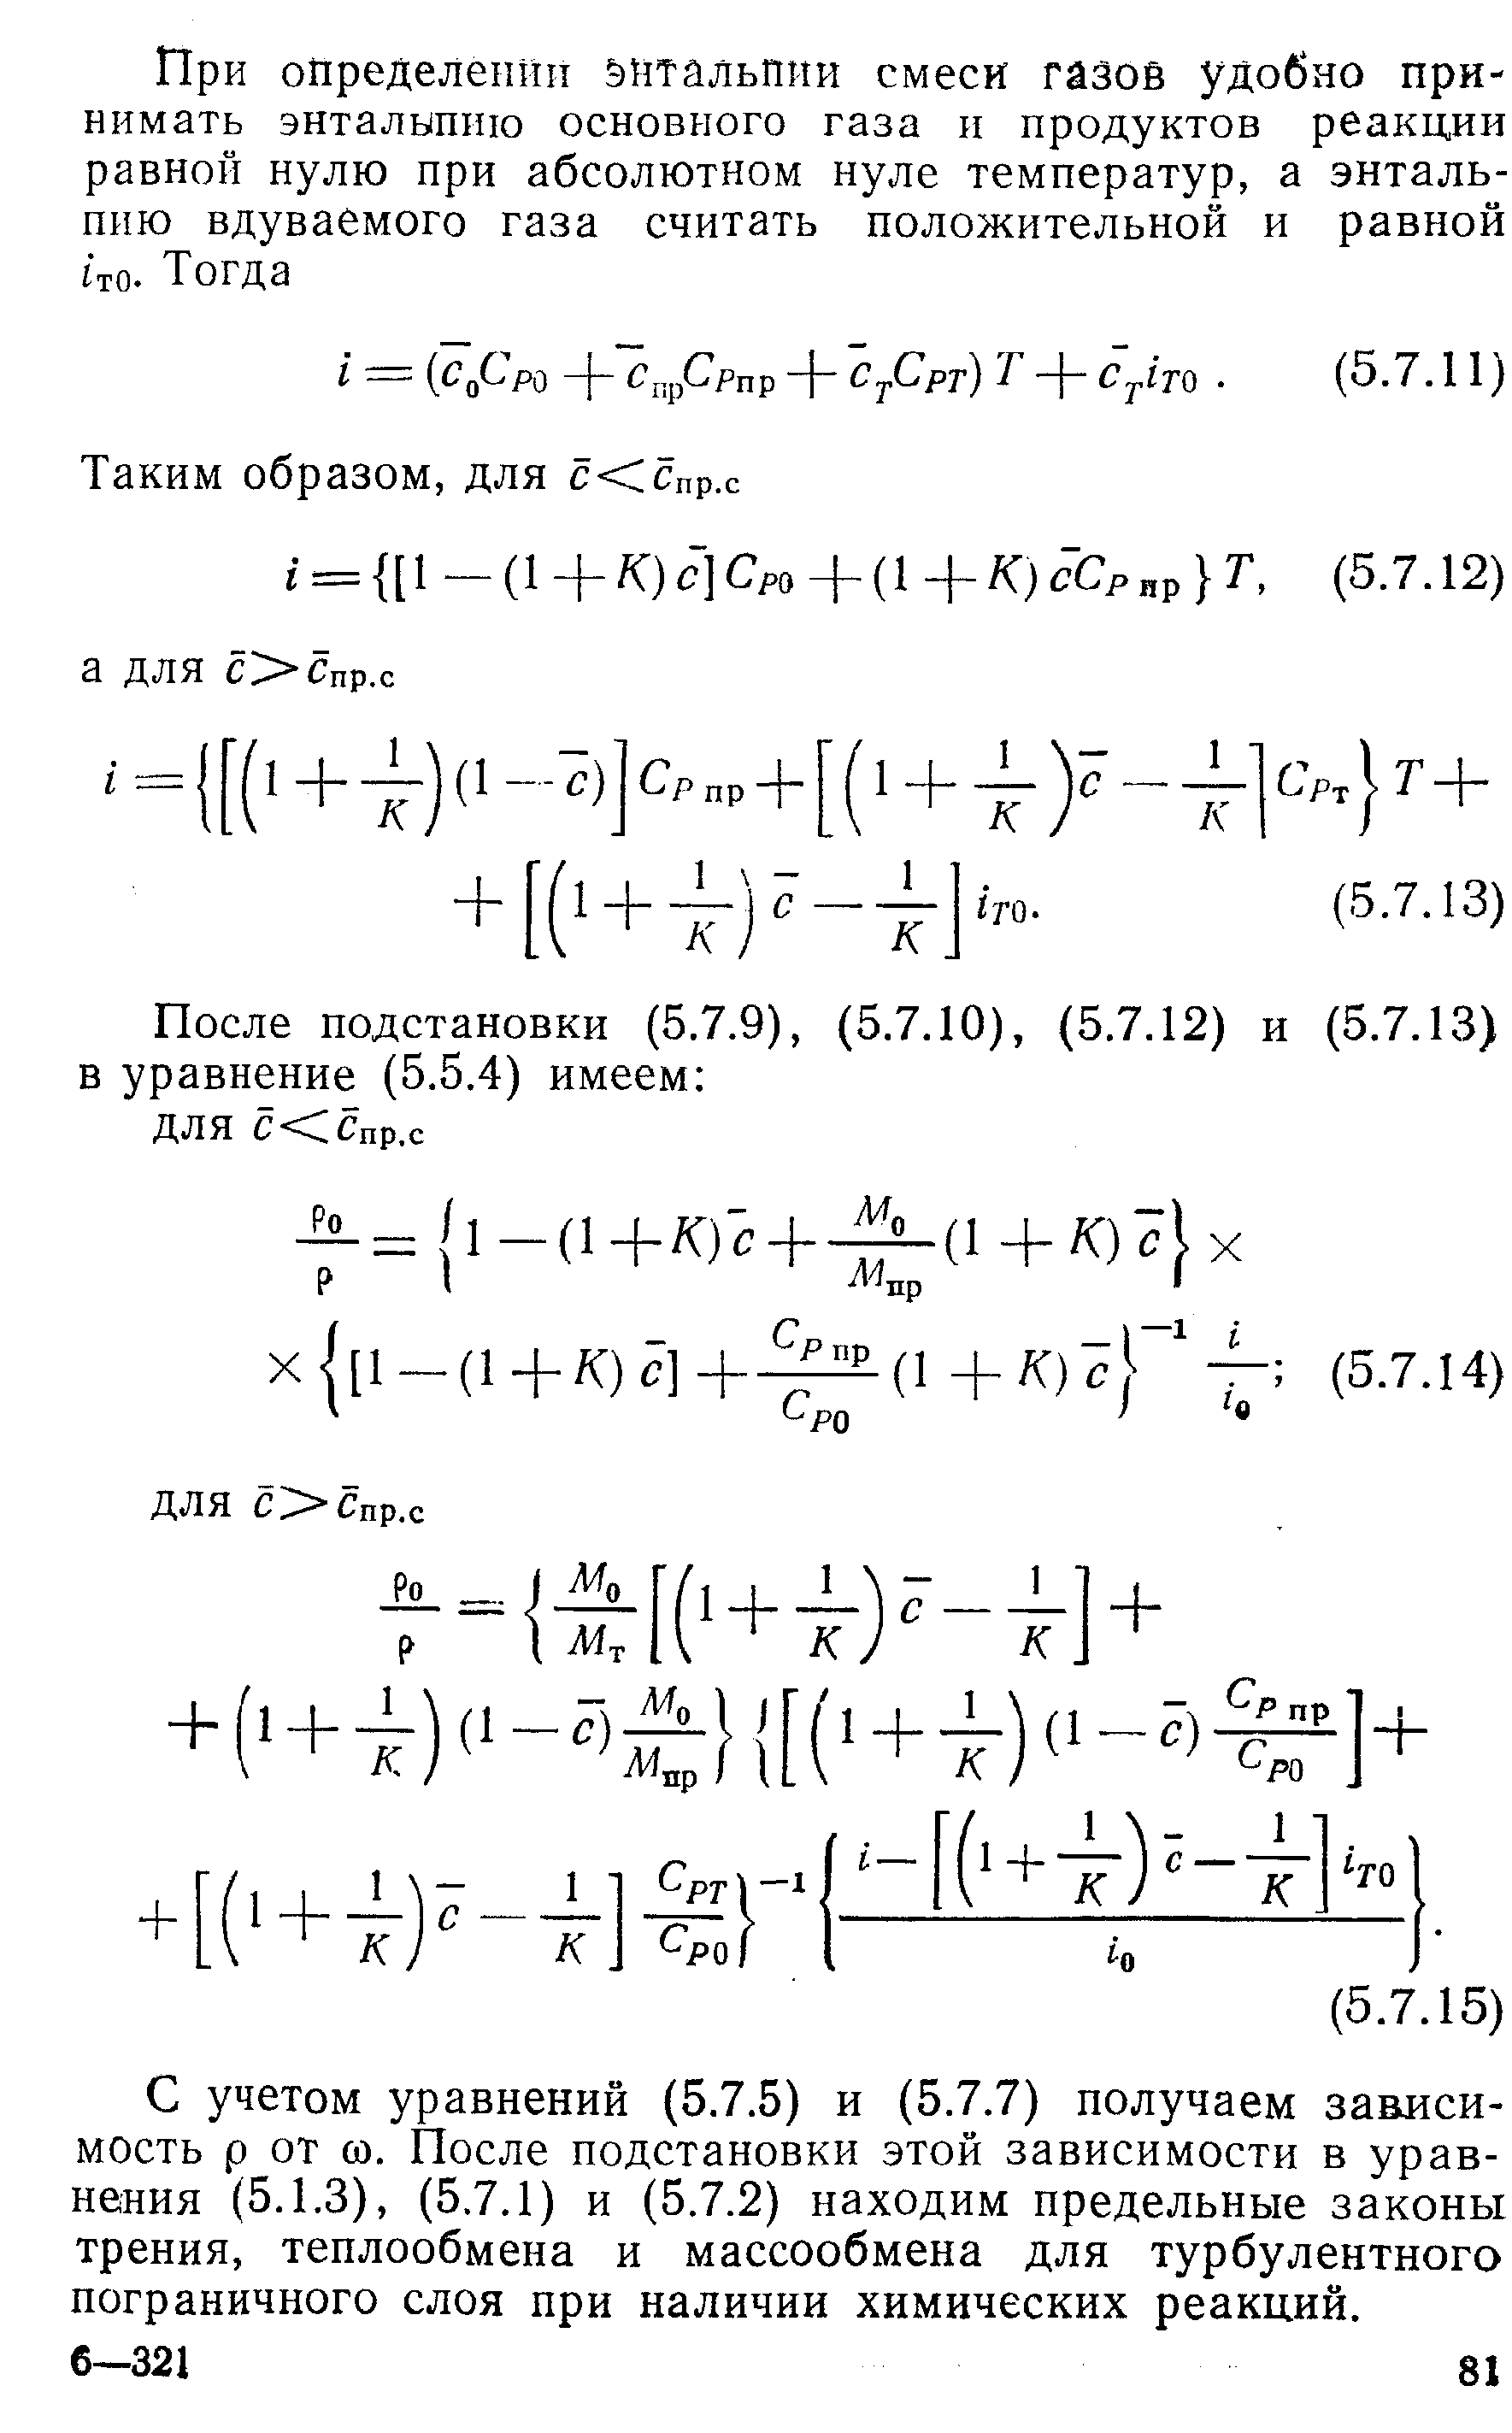 С учетом уравнений (5.7,5) и (5,7.7) получаем зависимость р от 0, После подстановки этой зависимости в уравнения (5,1.3), (5.7.1) и (5.7.2) находим предельные законы трения, теплообмена и массообмена для турбулентного пограничного слоя при наличии химических реакций.
